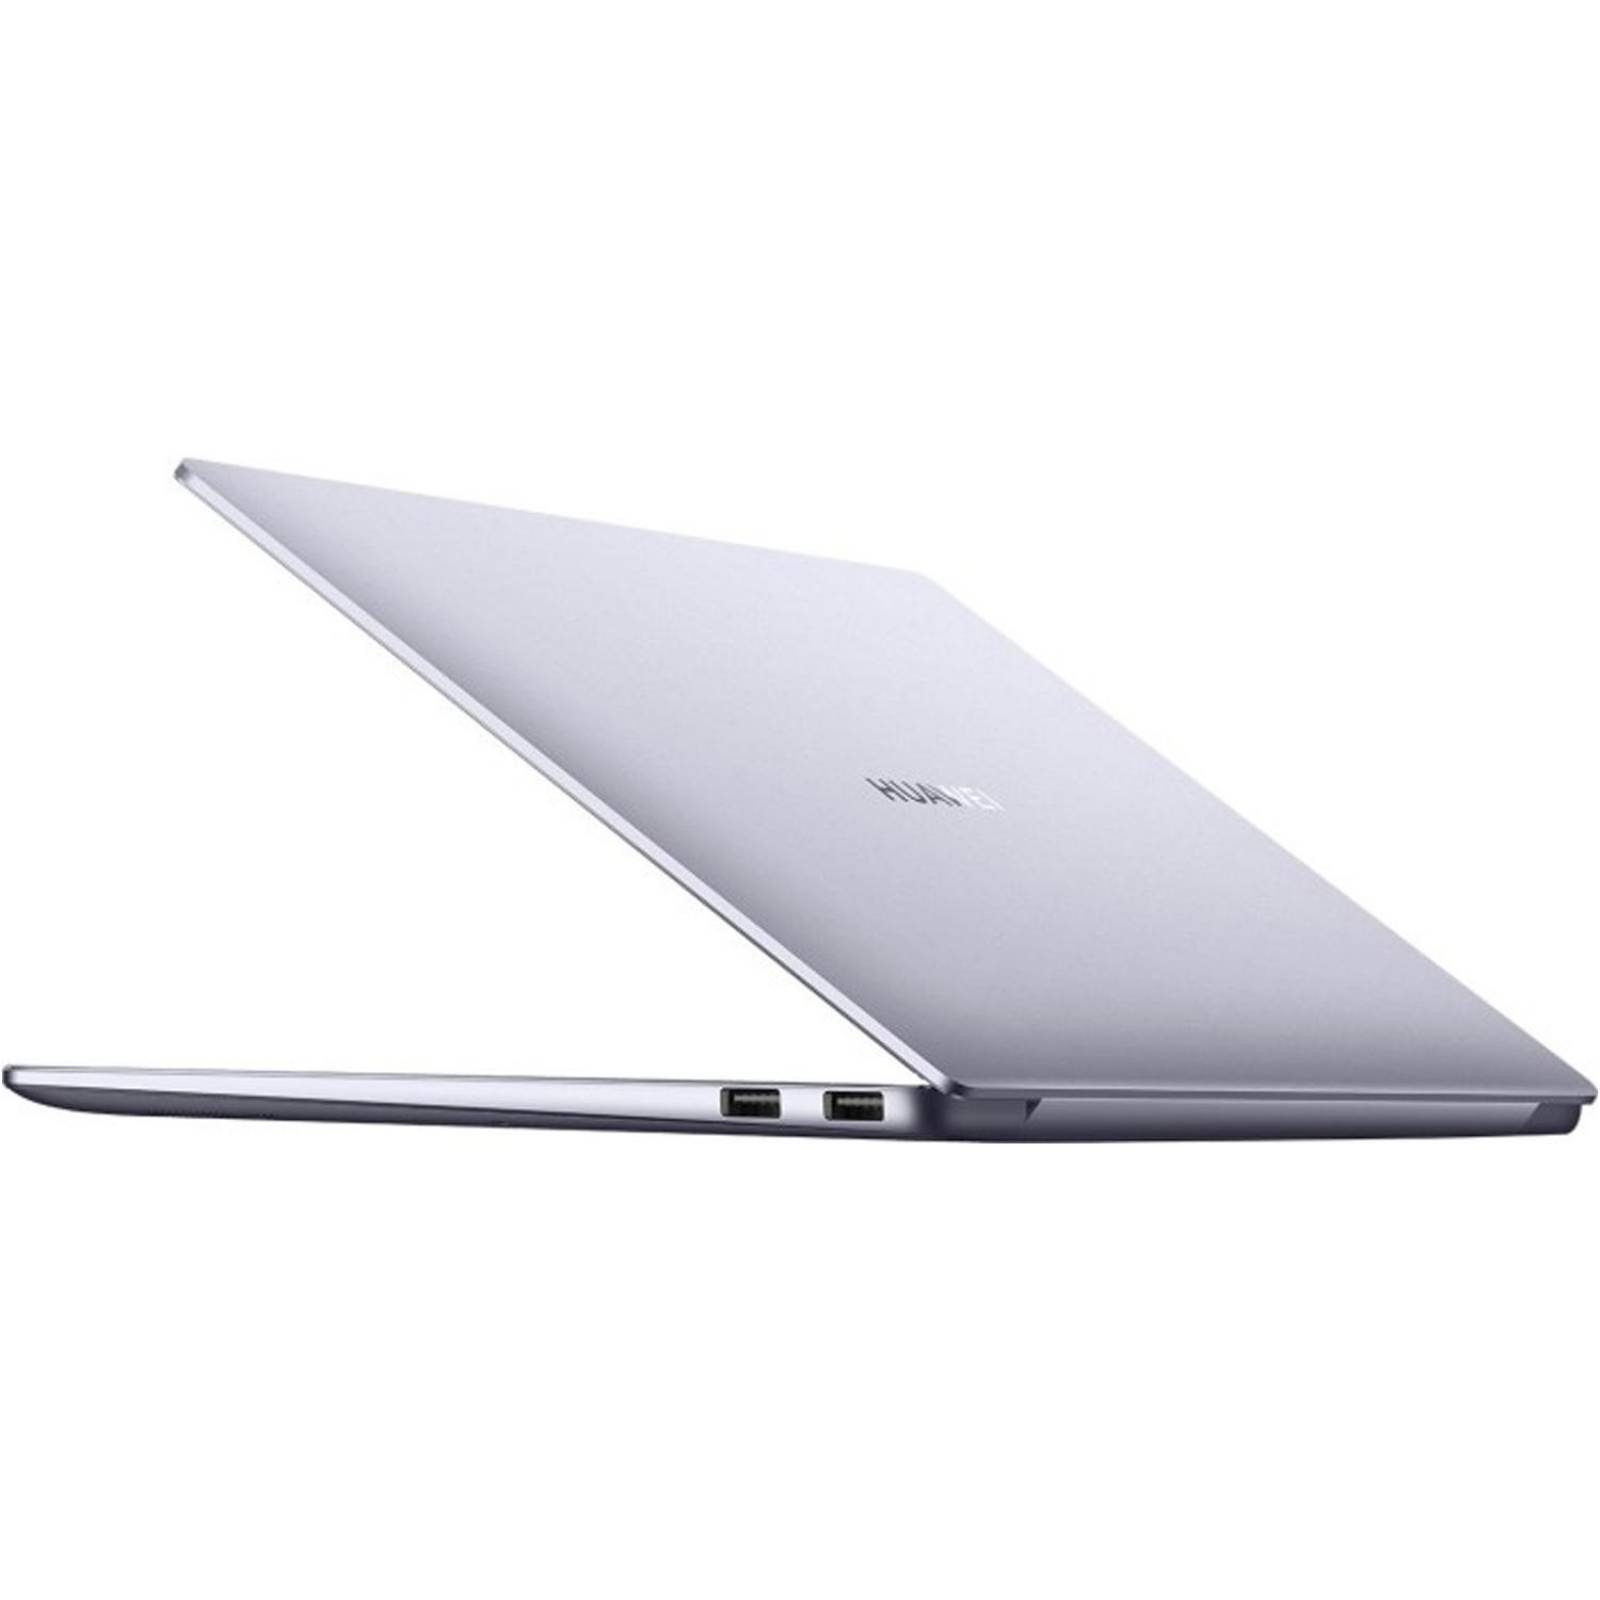 Laptop HUAWEI MATEBOOK 14 Ryzen 5 4600H 16GB 512GB SSD Win10 Pro 